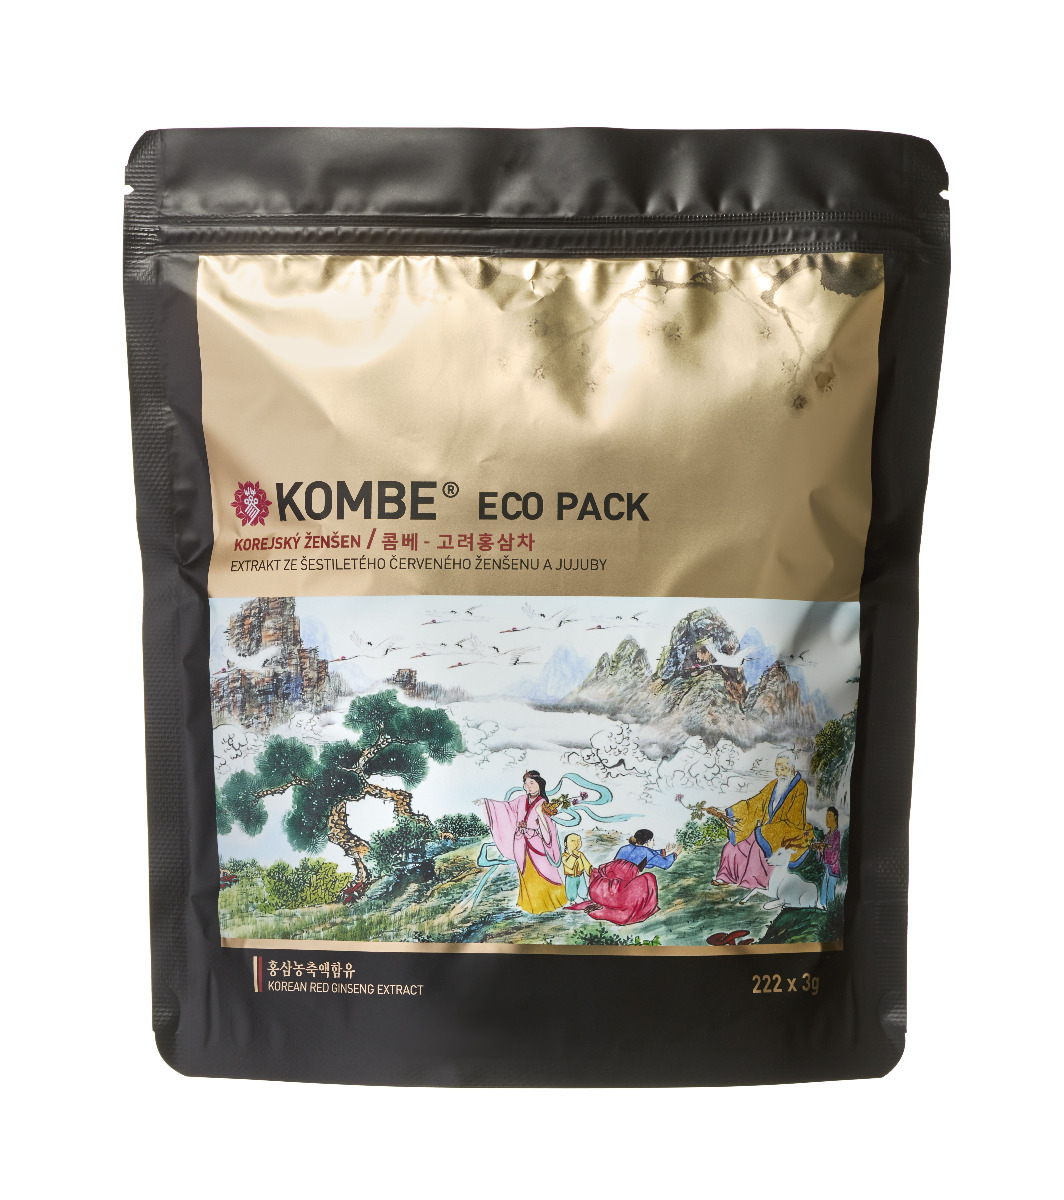 Kombe Korejský ženšenový čaj ECO pack 222x3 g Kombe